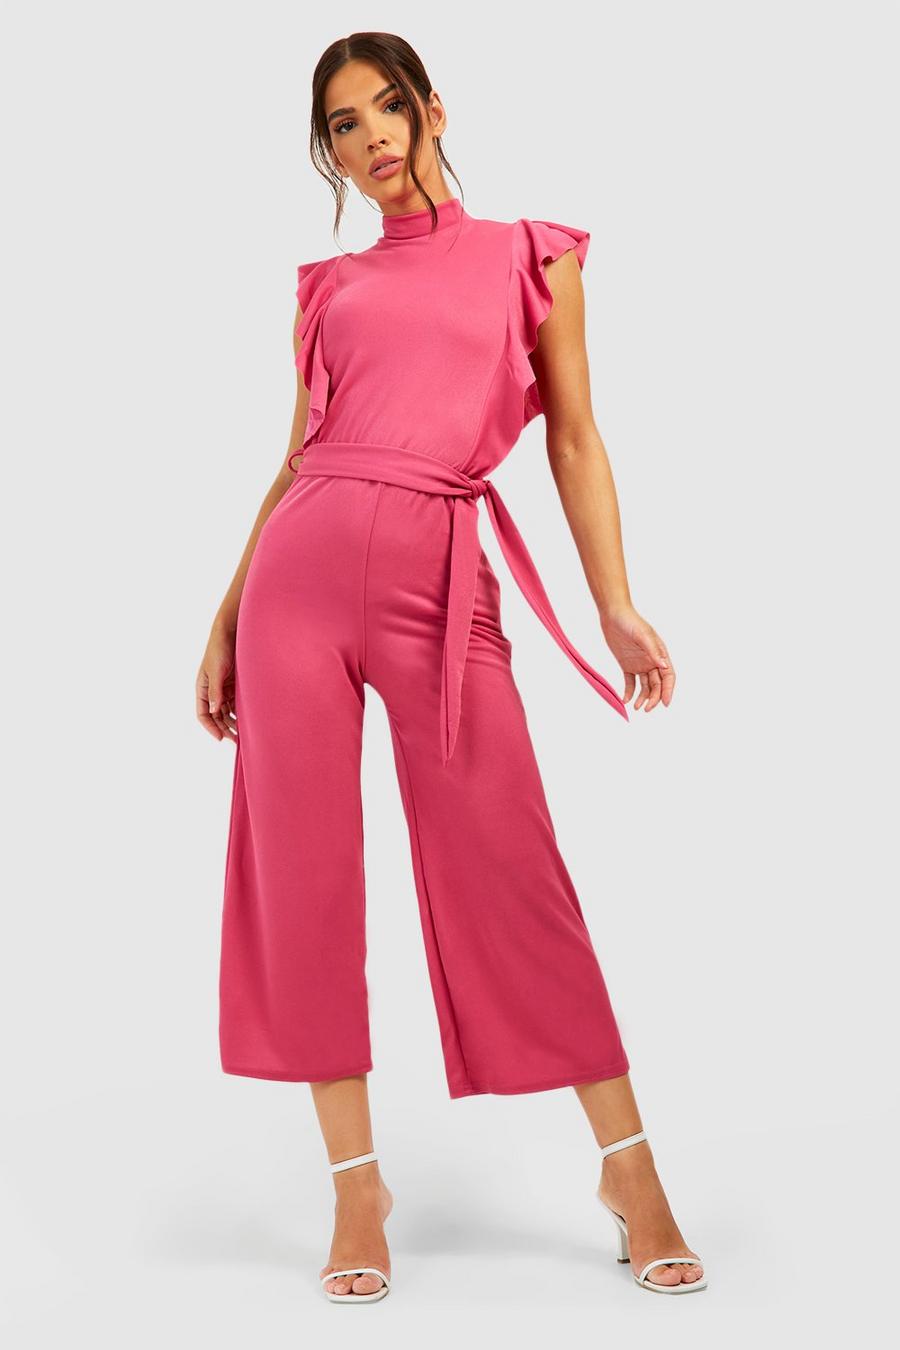 Hochgeschlossener Culotte-Jumpsuit mit Rüschen-Detail und Gürtel, Hot pink